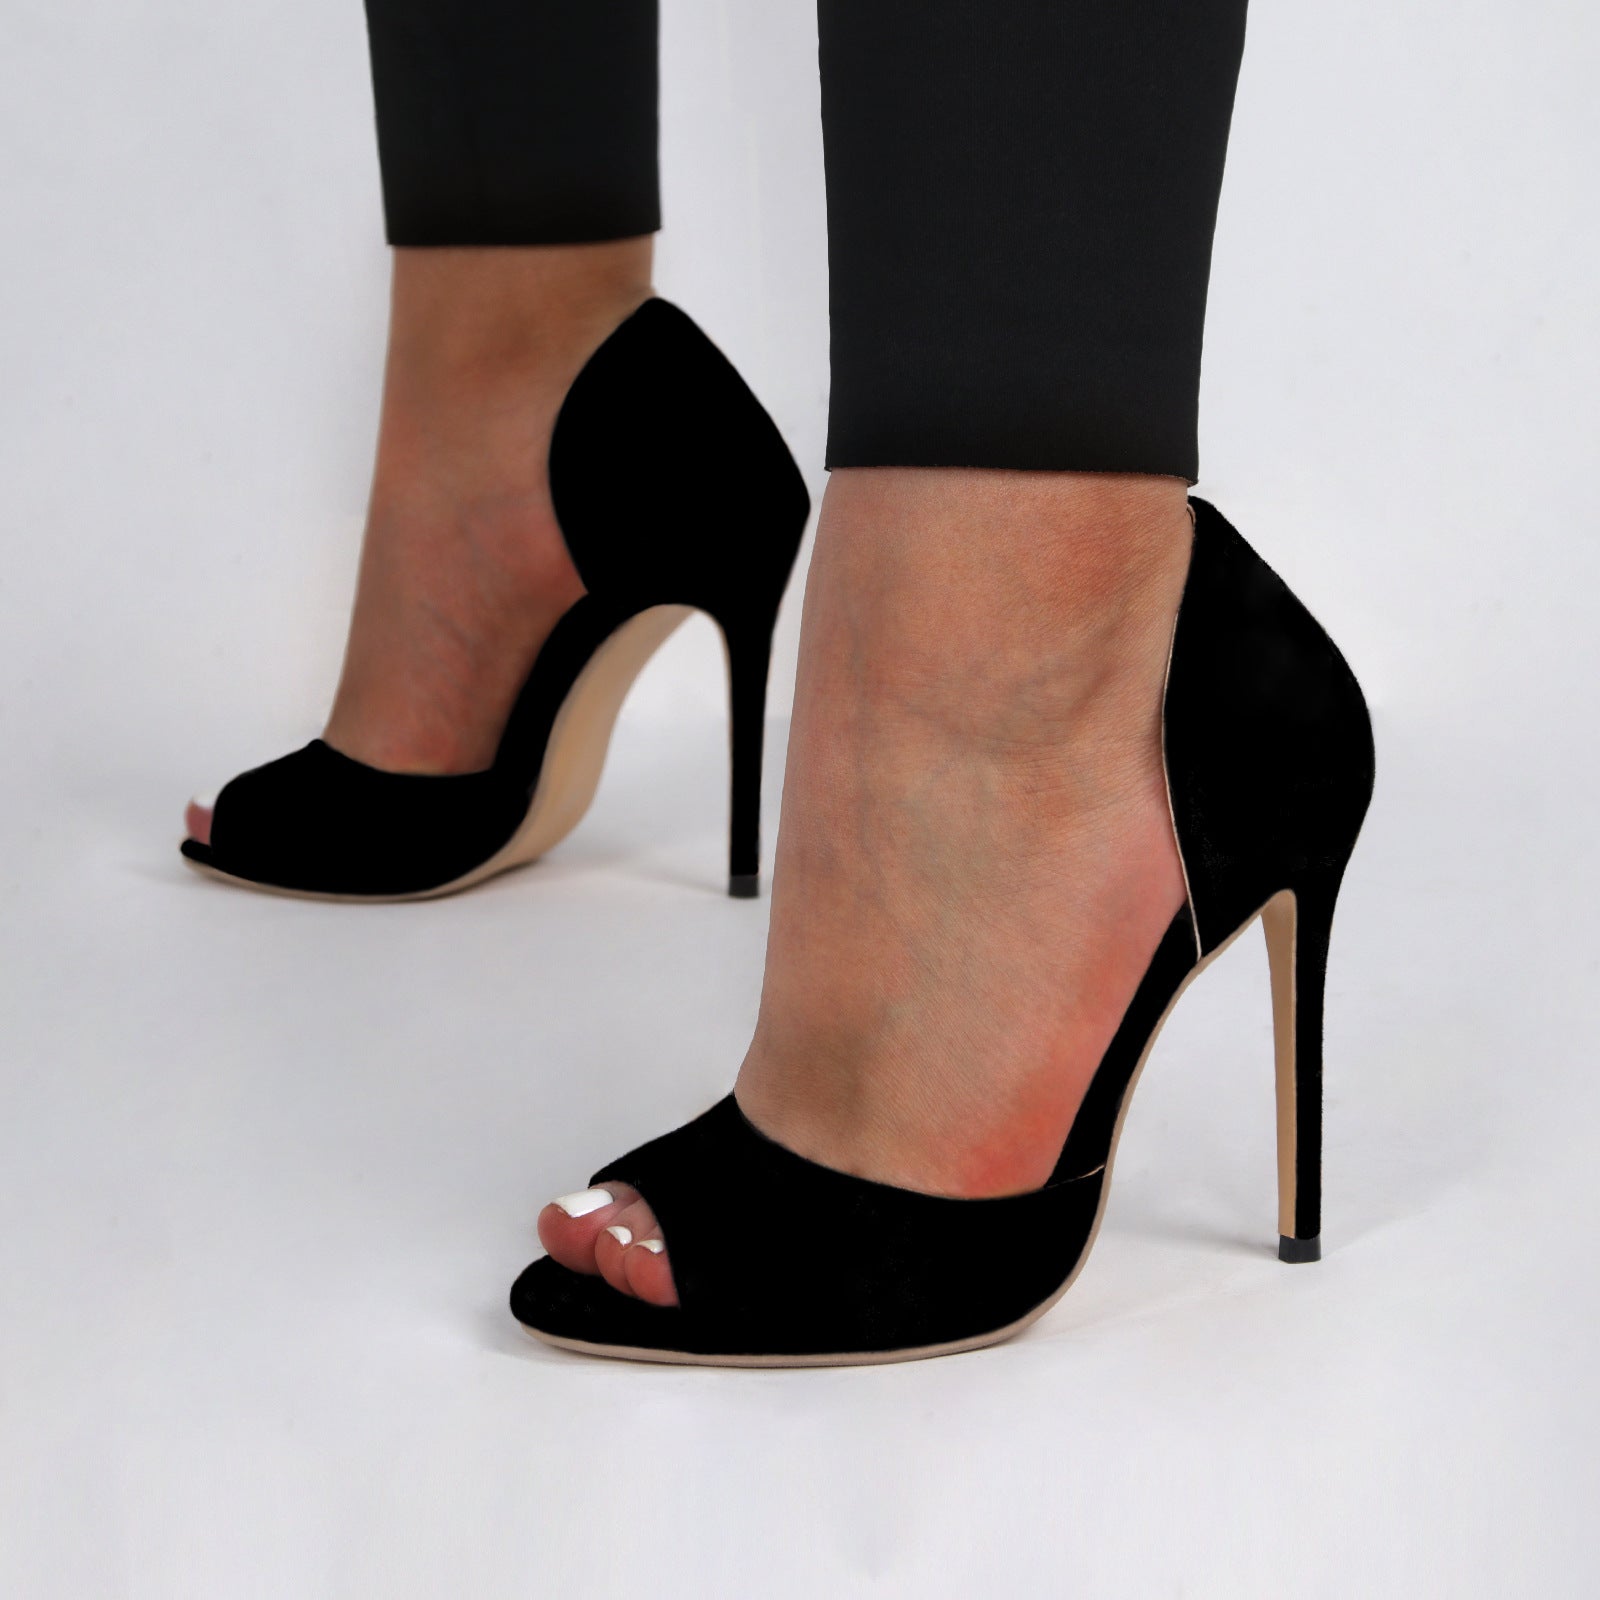 Lady's peep toe side cutout stiletto heels summer slip on party dressy heels